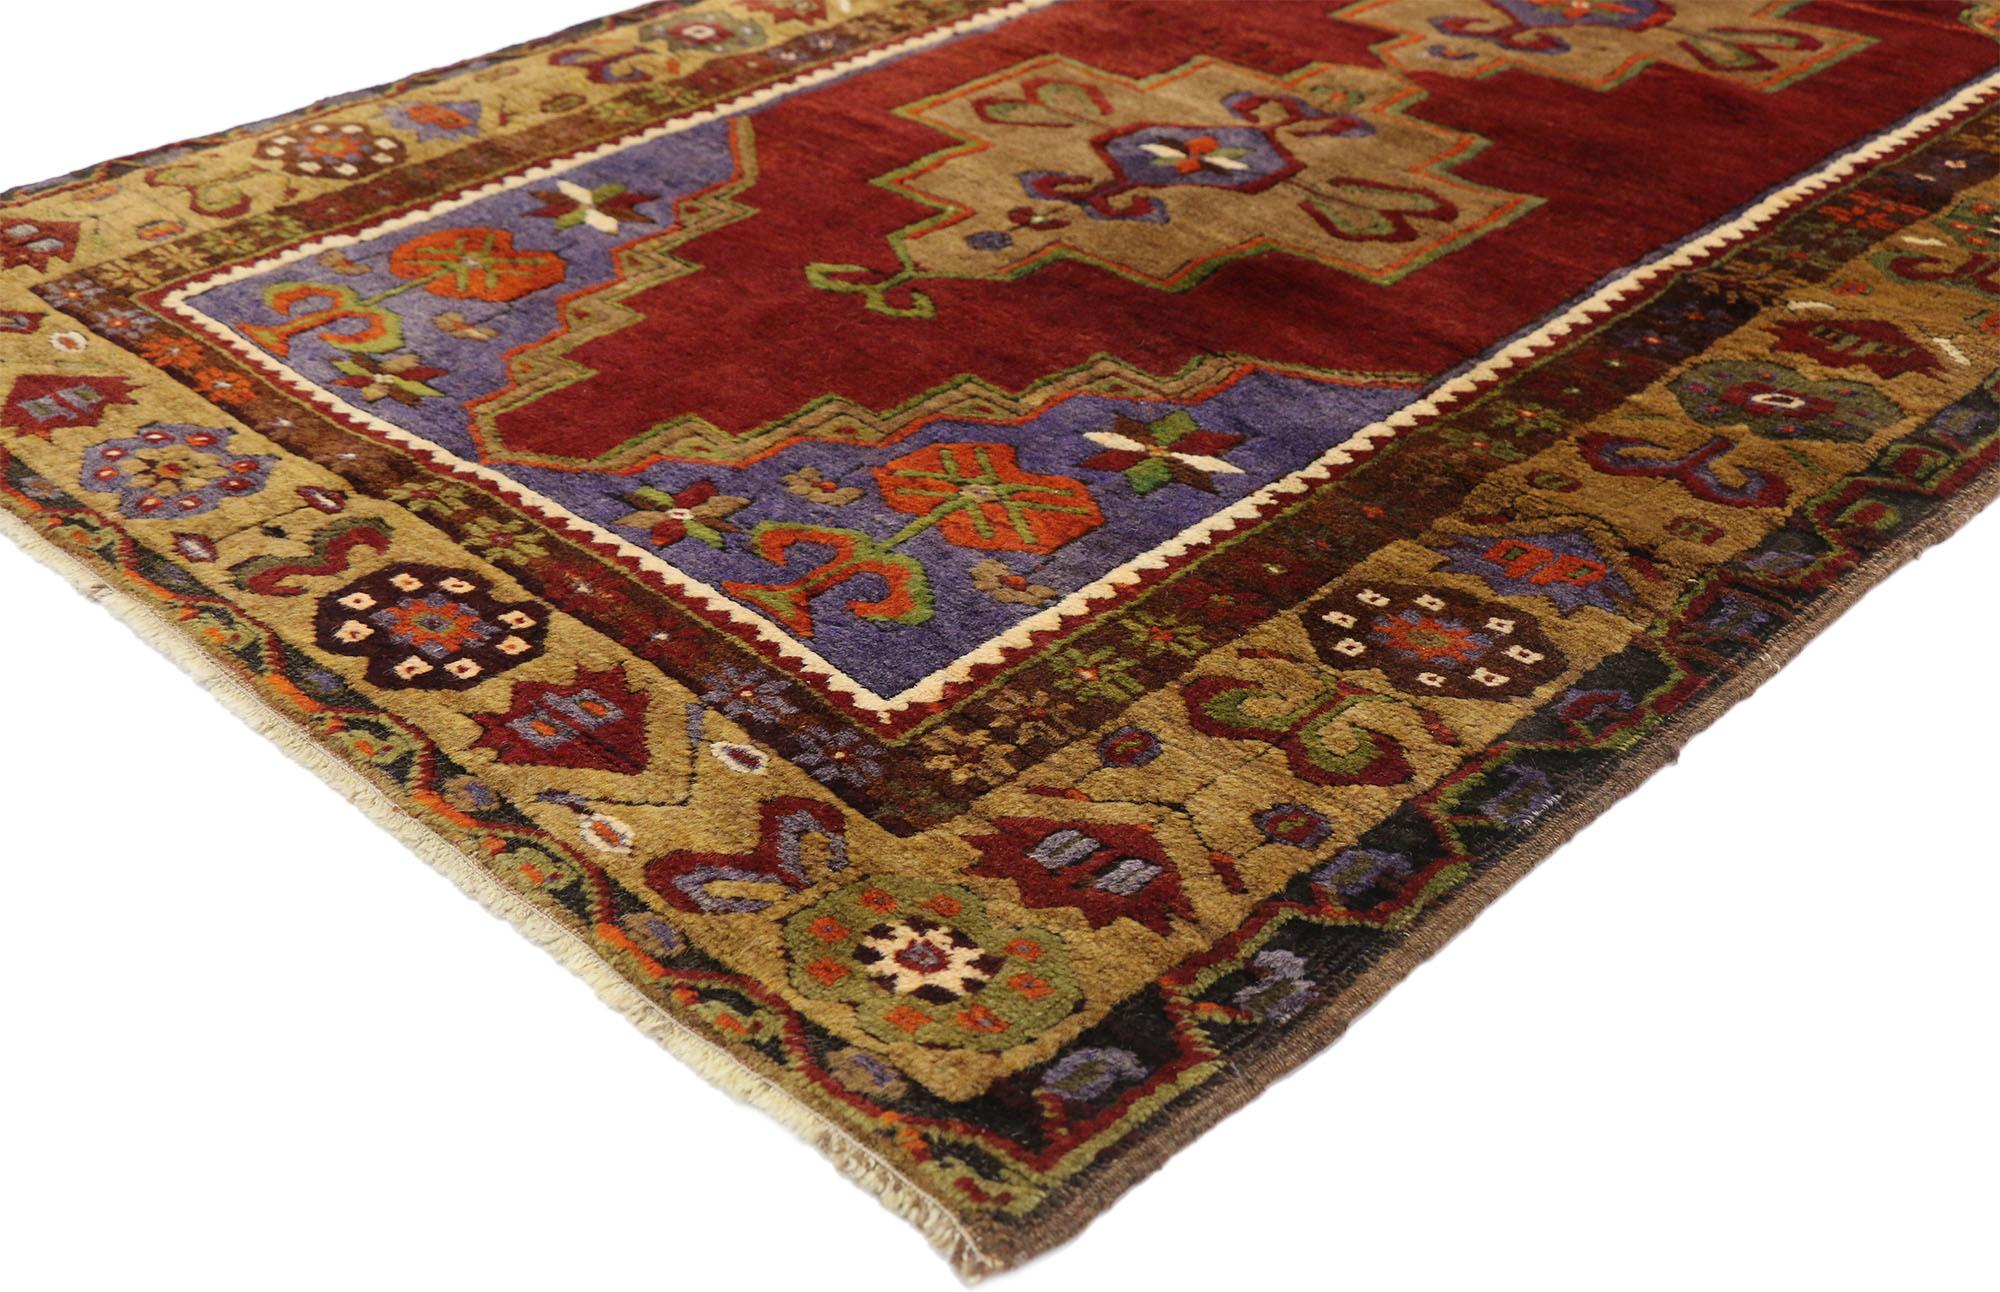 52446 Türkischer Oushak-Teppich mit buntem Arts & Crafts-Stil 03'05 x 05'11. Dieser handgeknüpfte türkische Oushak-Teppich aus Wolle zeigt zwei miteinander verbundene, gestufte sechseckige Medaillons mit Widderhorn-Anhängern, die auf einem